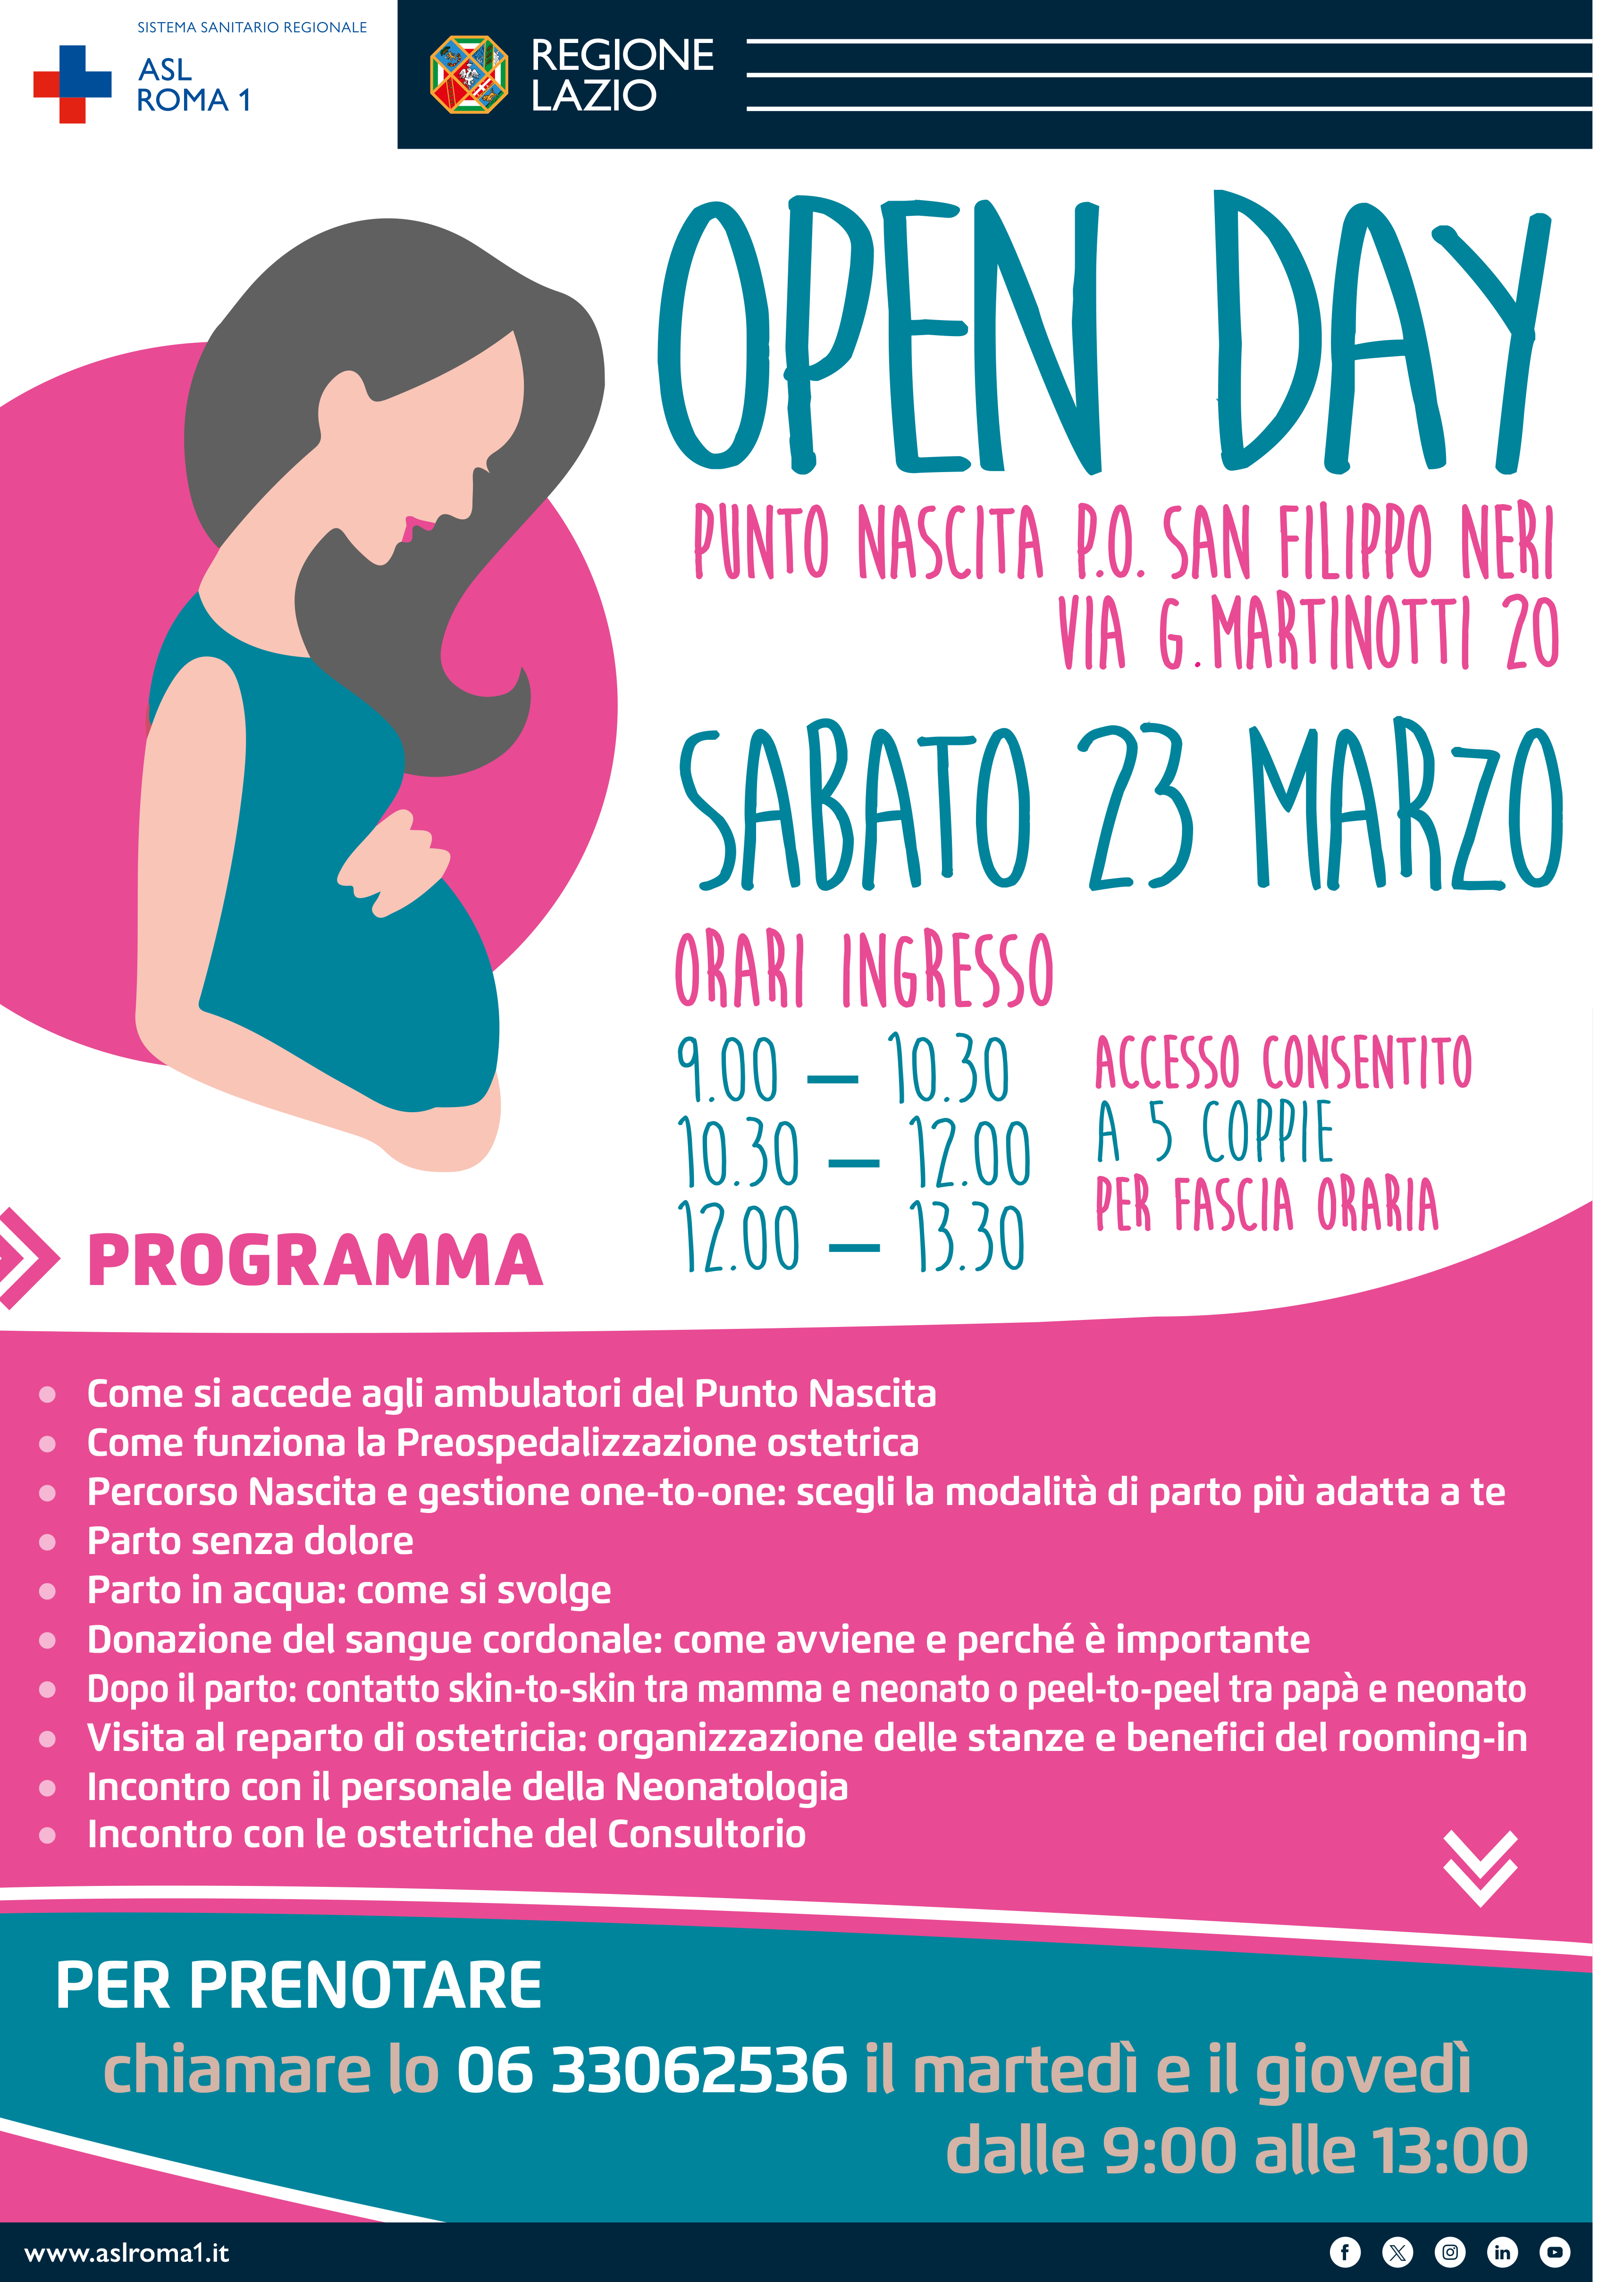 23 marzo Open Day Punto Nascita all’Ospedale San Filippo Neri